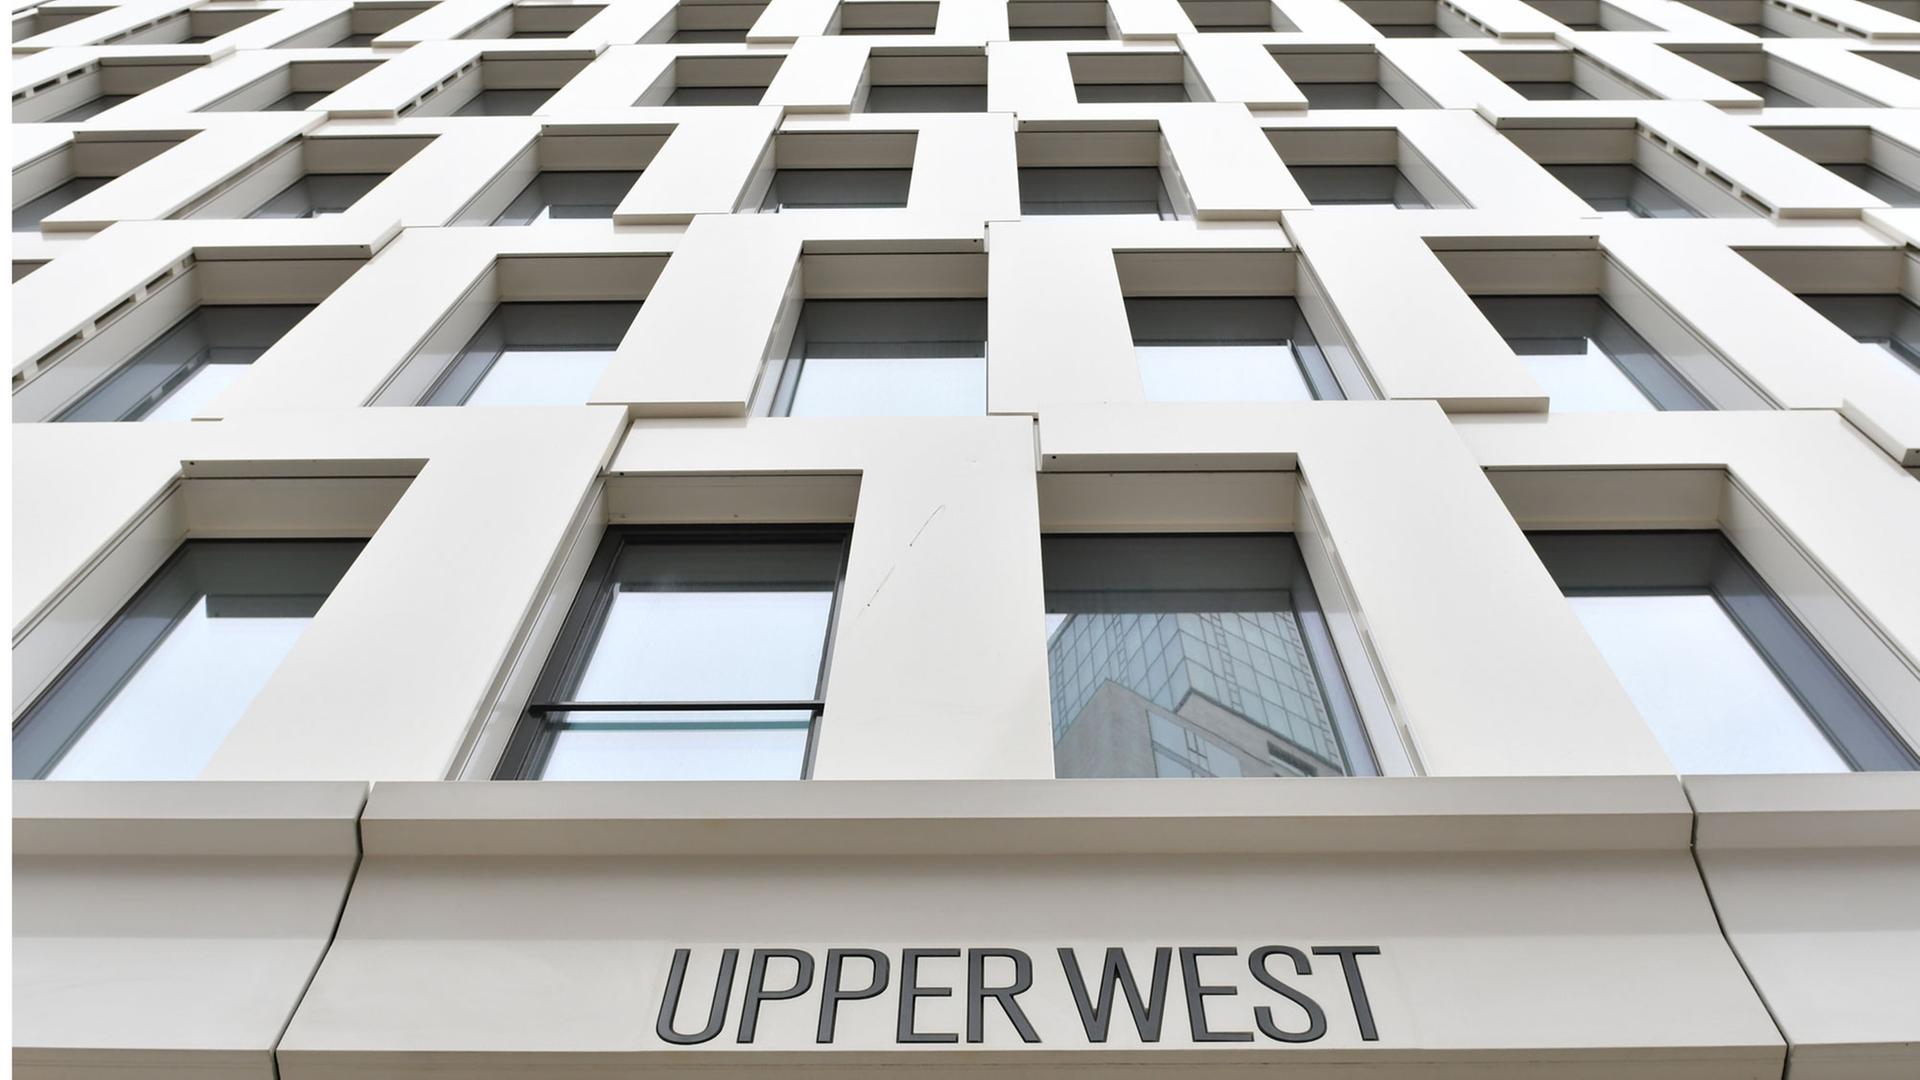 Zu sehen ist das neue Hochhaus mit dem Titel "Upper West" am Breitscheidplatz in Berlin mit seinen zahlreichen Glasfenstern. Der 118 Meter hohe Büroturm wird am 03.05. 2017 eröffnet.